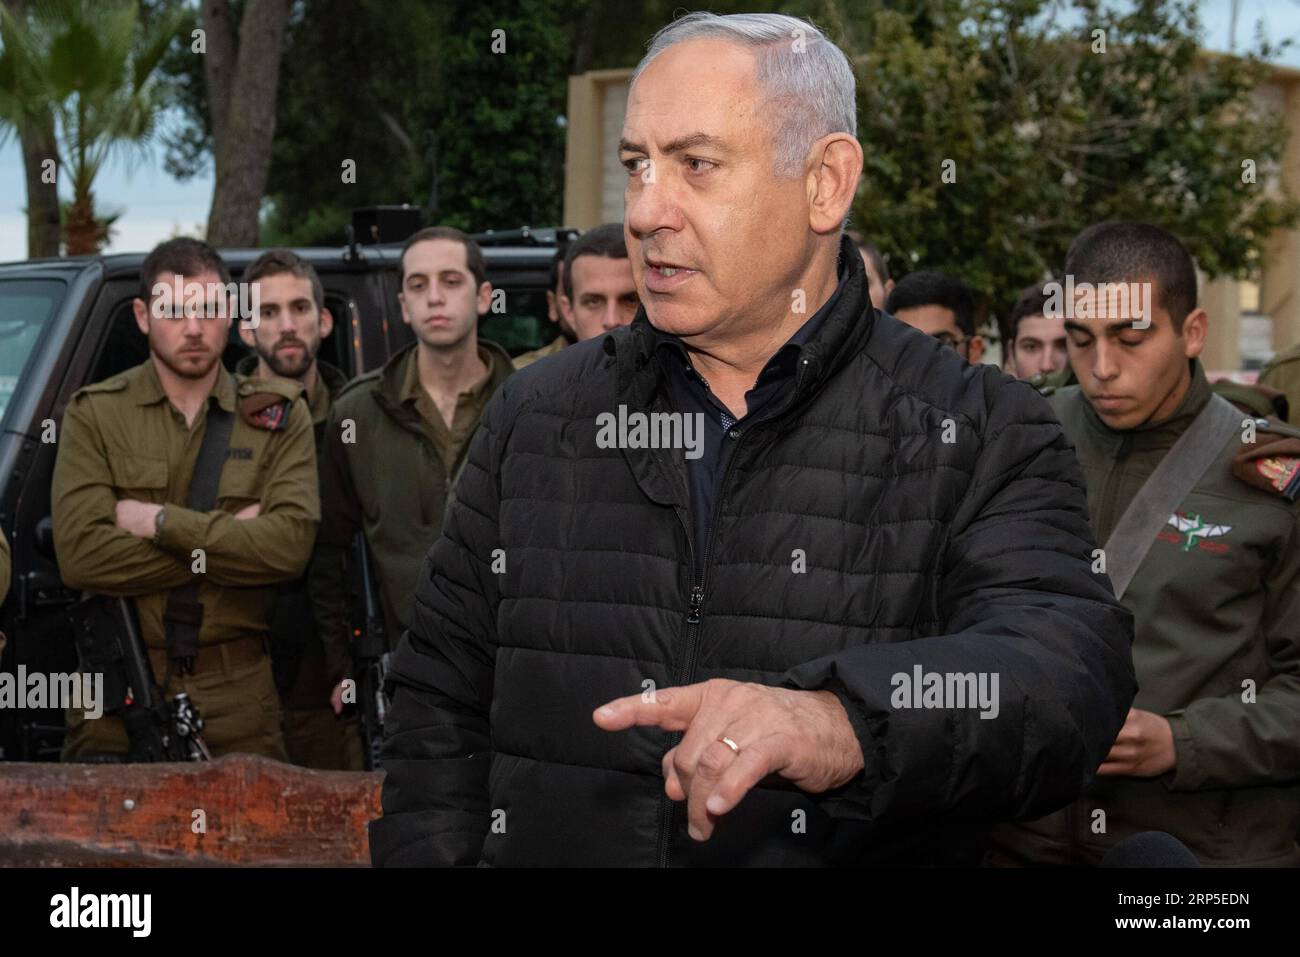 (181211) -- SAFED (ISRAELE), 11 dicembre 2018 -- il primo ministro israeliano Benjamin Netanyahu (fronte) parla durante una visita alla base di comando settentrionale nella città israeliana settentrionale di Safed, l'11 dicembre 2018. Martedì Benjamin Netanyahu ha avvertito che la milizia libanese di Hezbollah subirà colpi inimmaginabili se resisterà alla recente operazione israeliana di distruggere i tunnel transfrontalieri. JINI/) ISRAEL-SAFED-PM-NORTHERN BORDER-VISIT AYALXMARGOLIN PUBLICATIONXNOTXINXCHN Foto Stock